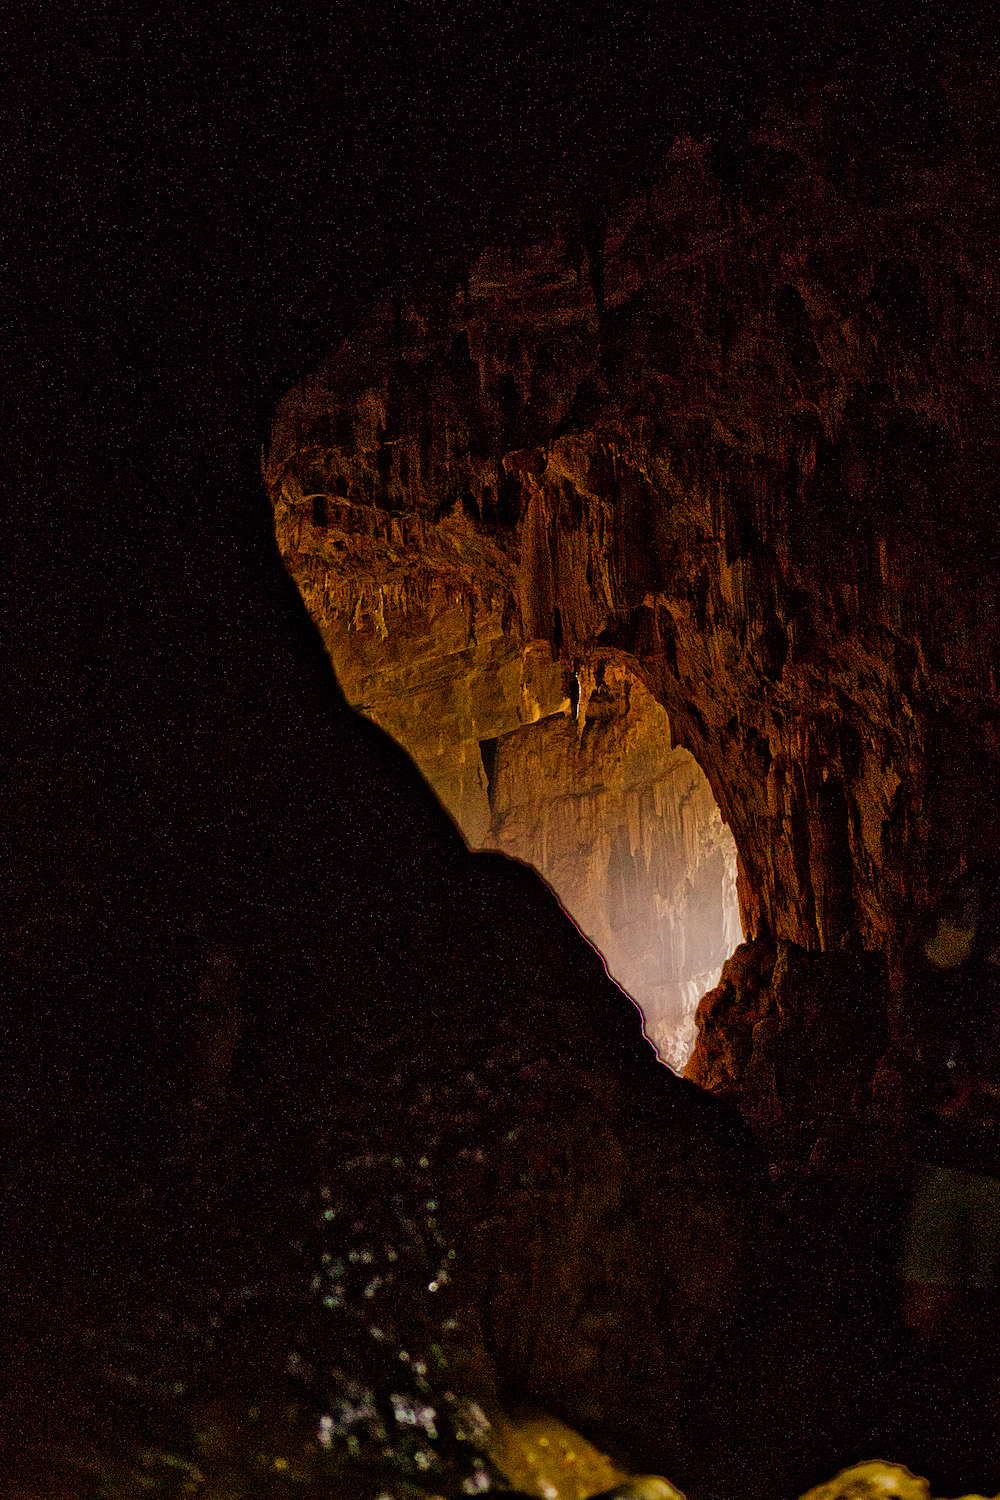 Tu Lan Cave Phong Nha-Kẻ Bàng National Park | 2 Wochen Vietnam Rundreise Phong Nha-Kẻ Bàng National Park - Vietnam round trip